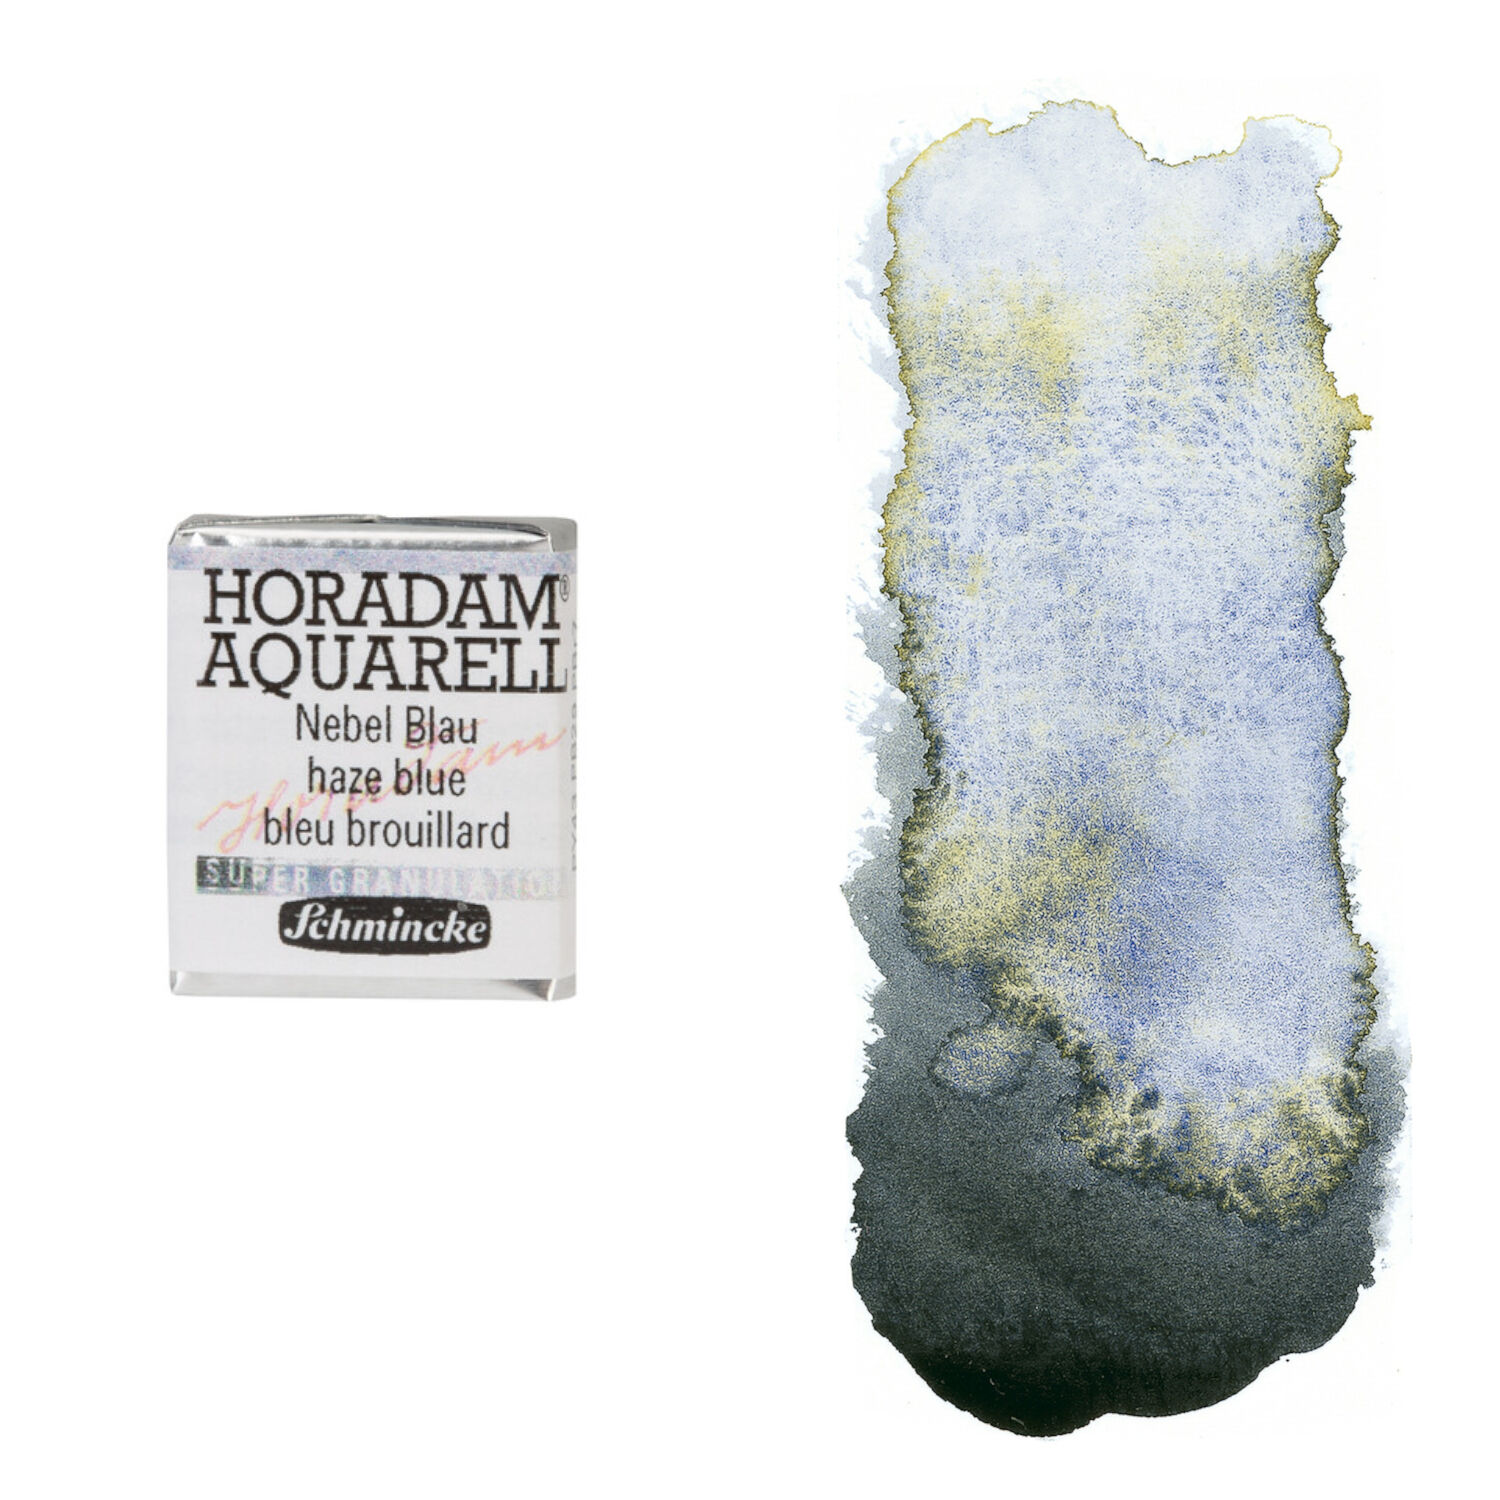 NEU Horadam Aquarell Super Granulation, 1/2 Npfchen, Nebel Blau